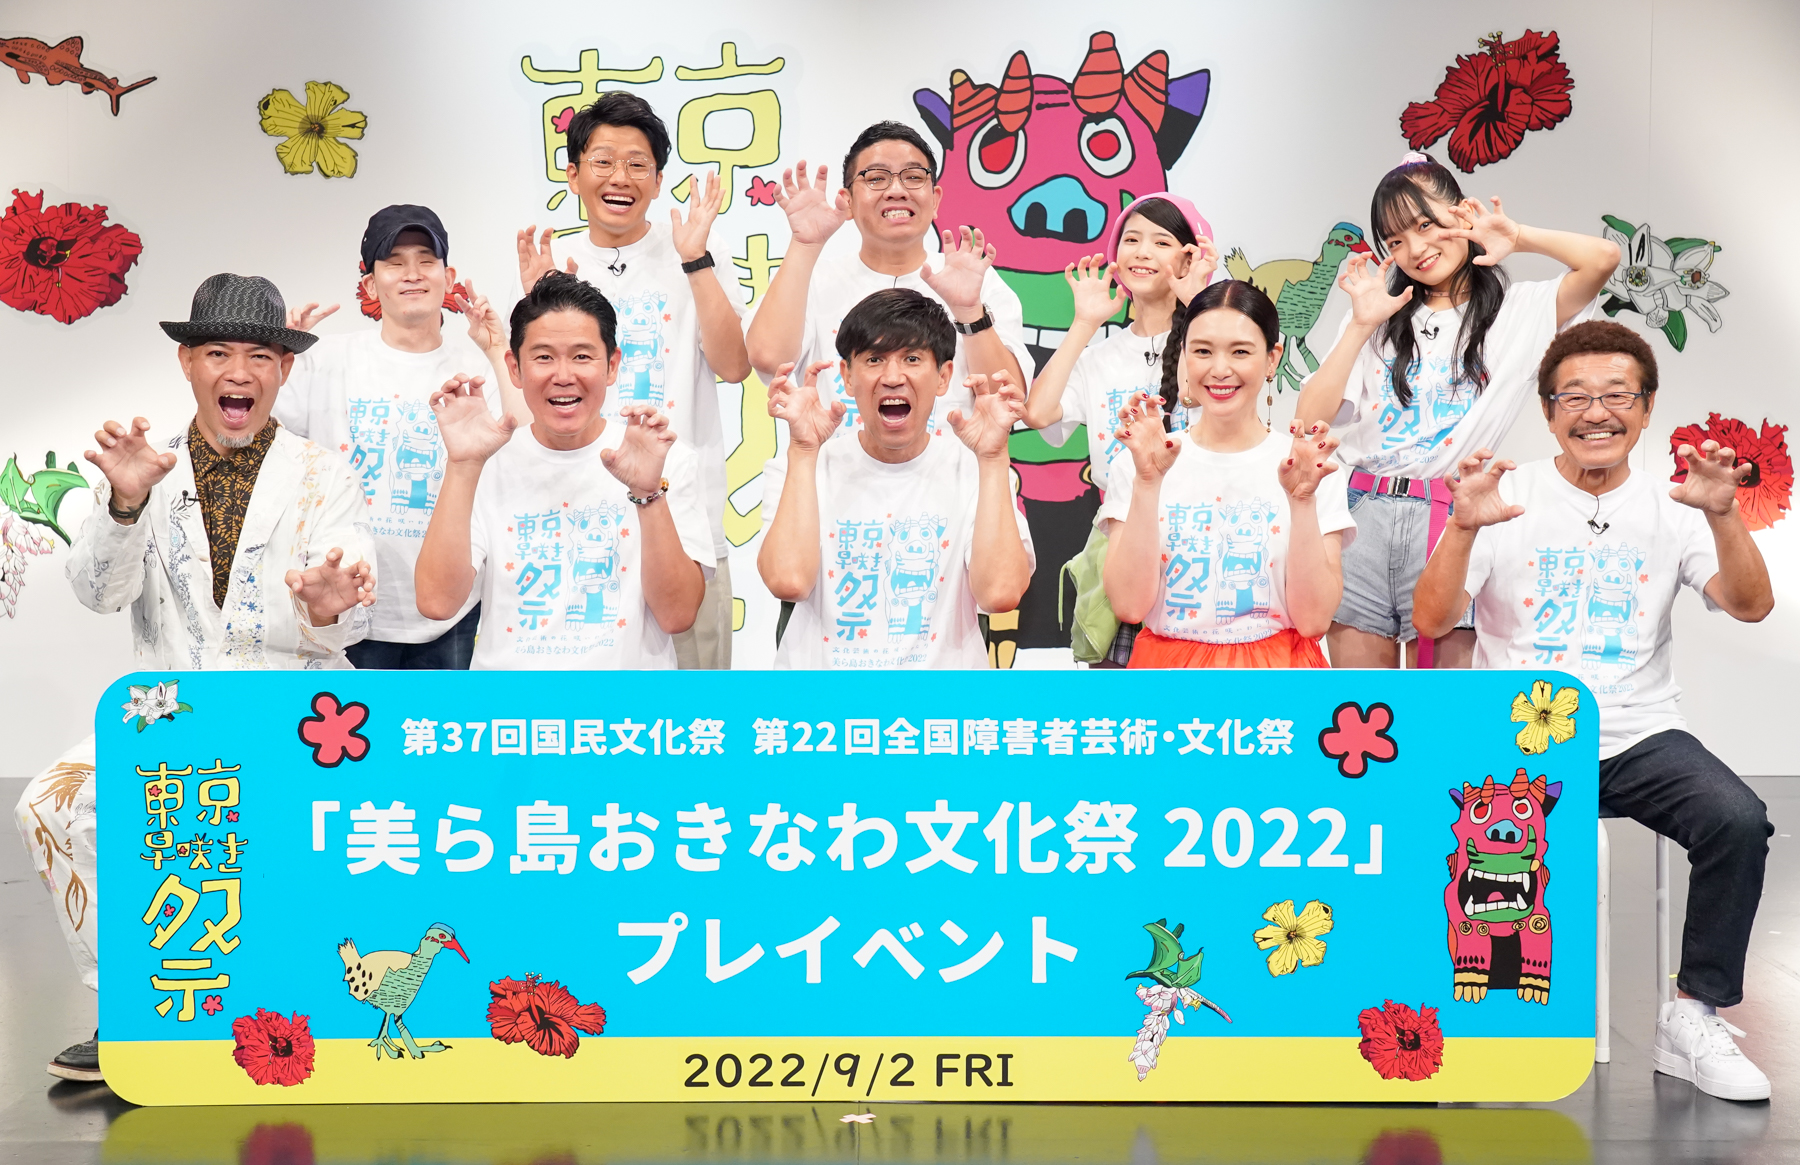 美ら島おきなわ文化祭プレイベント「東京早咲き祭」BSよしもとで9月25